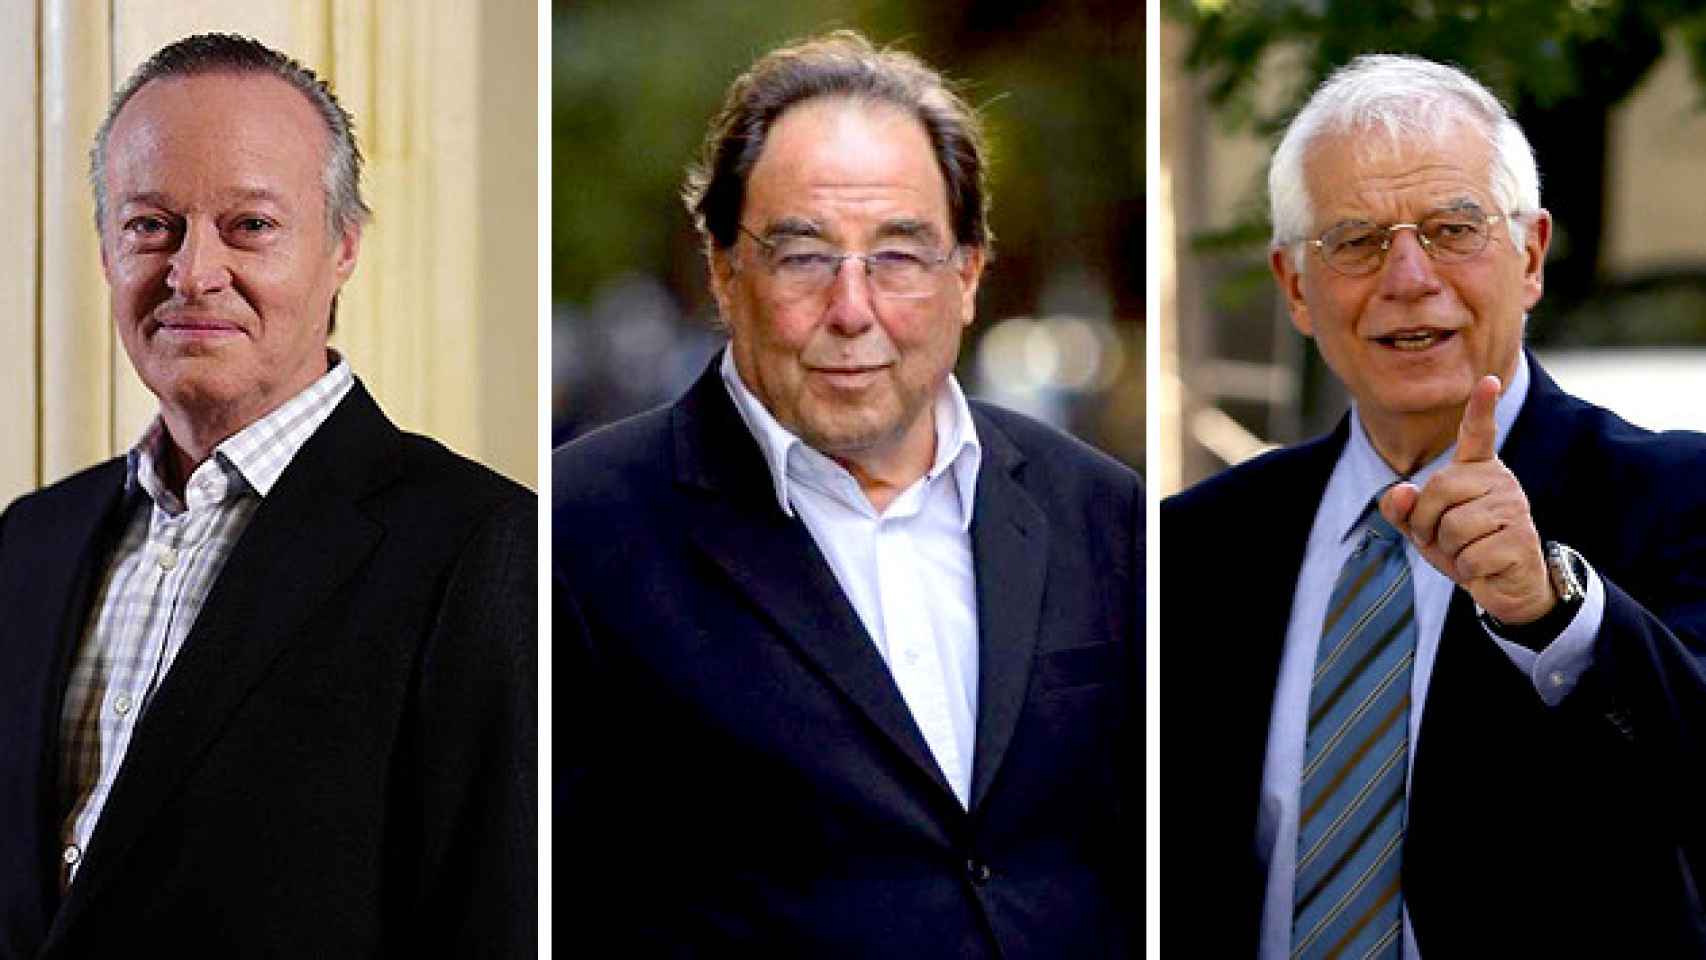 Expresidente del PPC, Josep Piqué; el fundador de Ciudadanos, Francesc de Carreras y el exministro socialista, Josep Borrell / CG